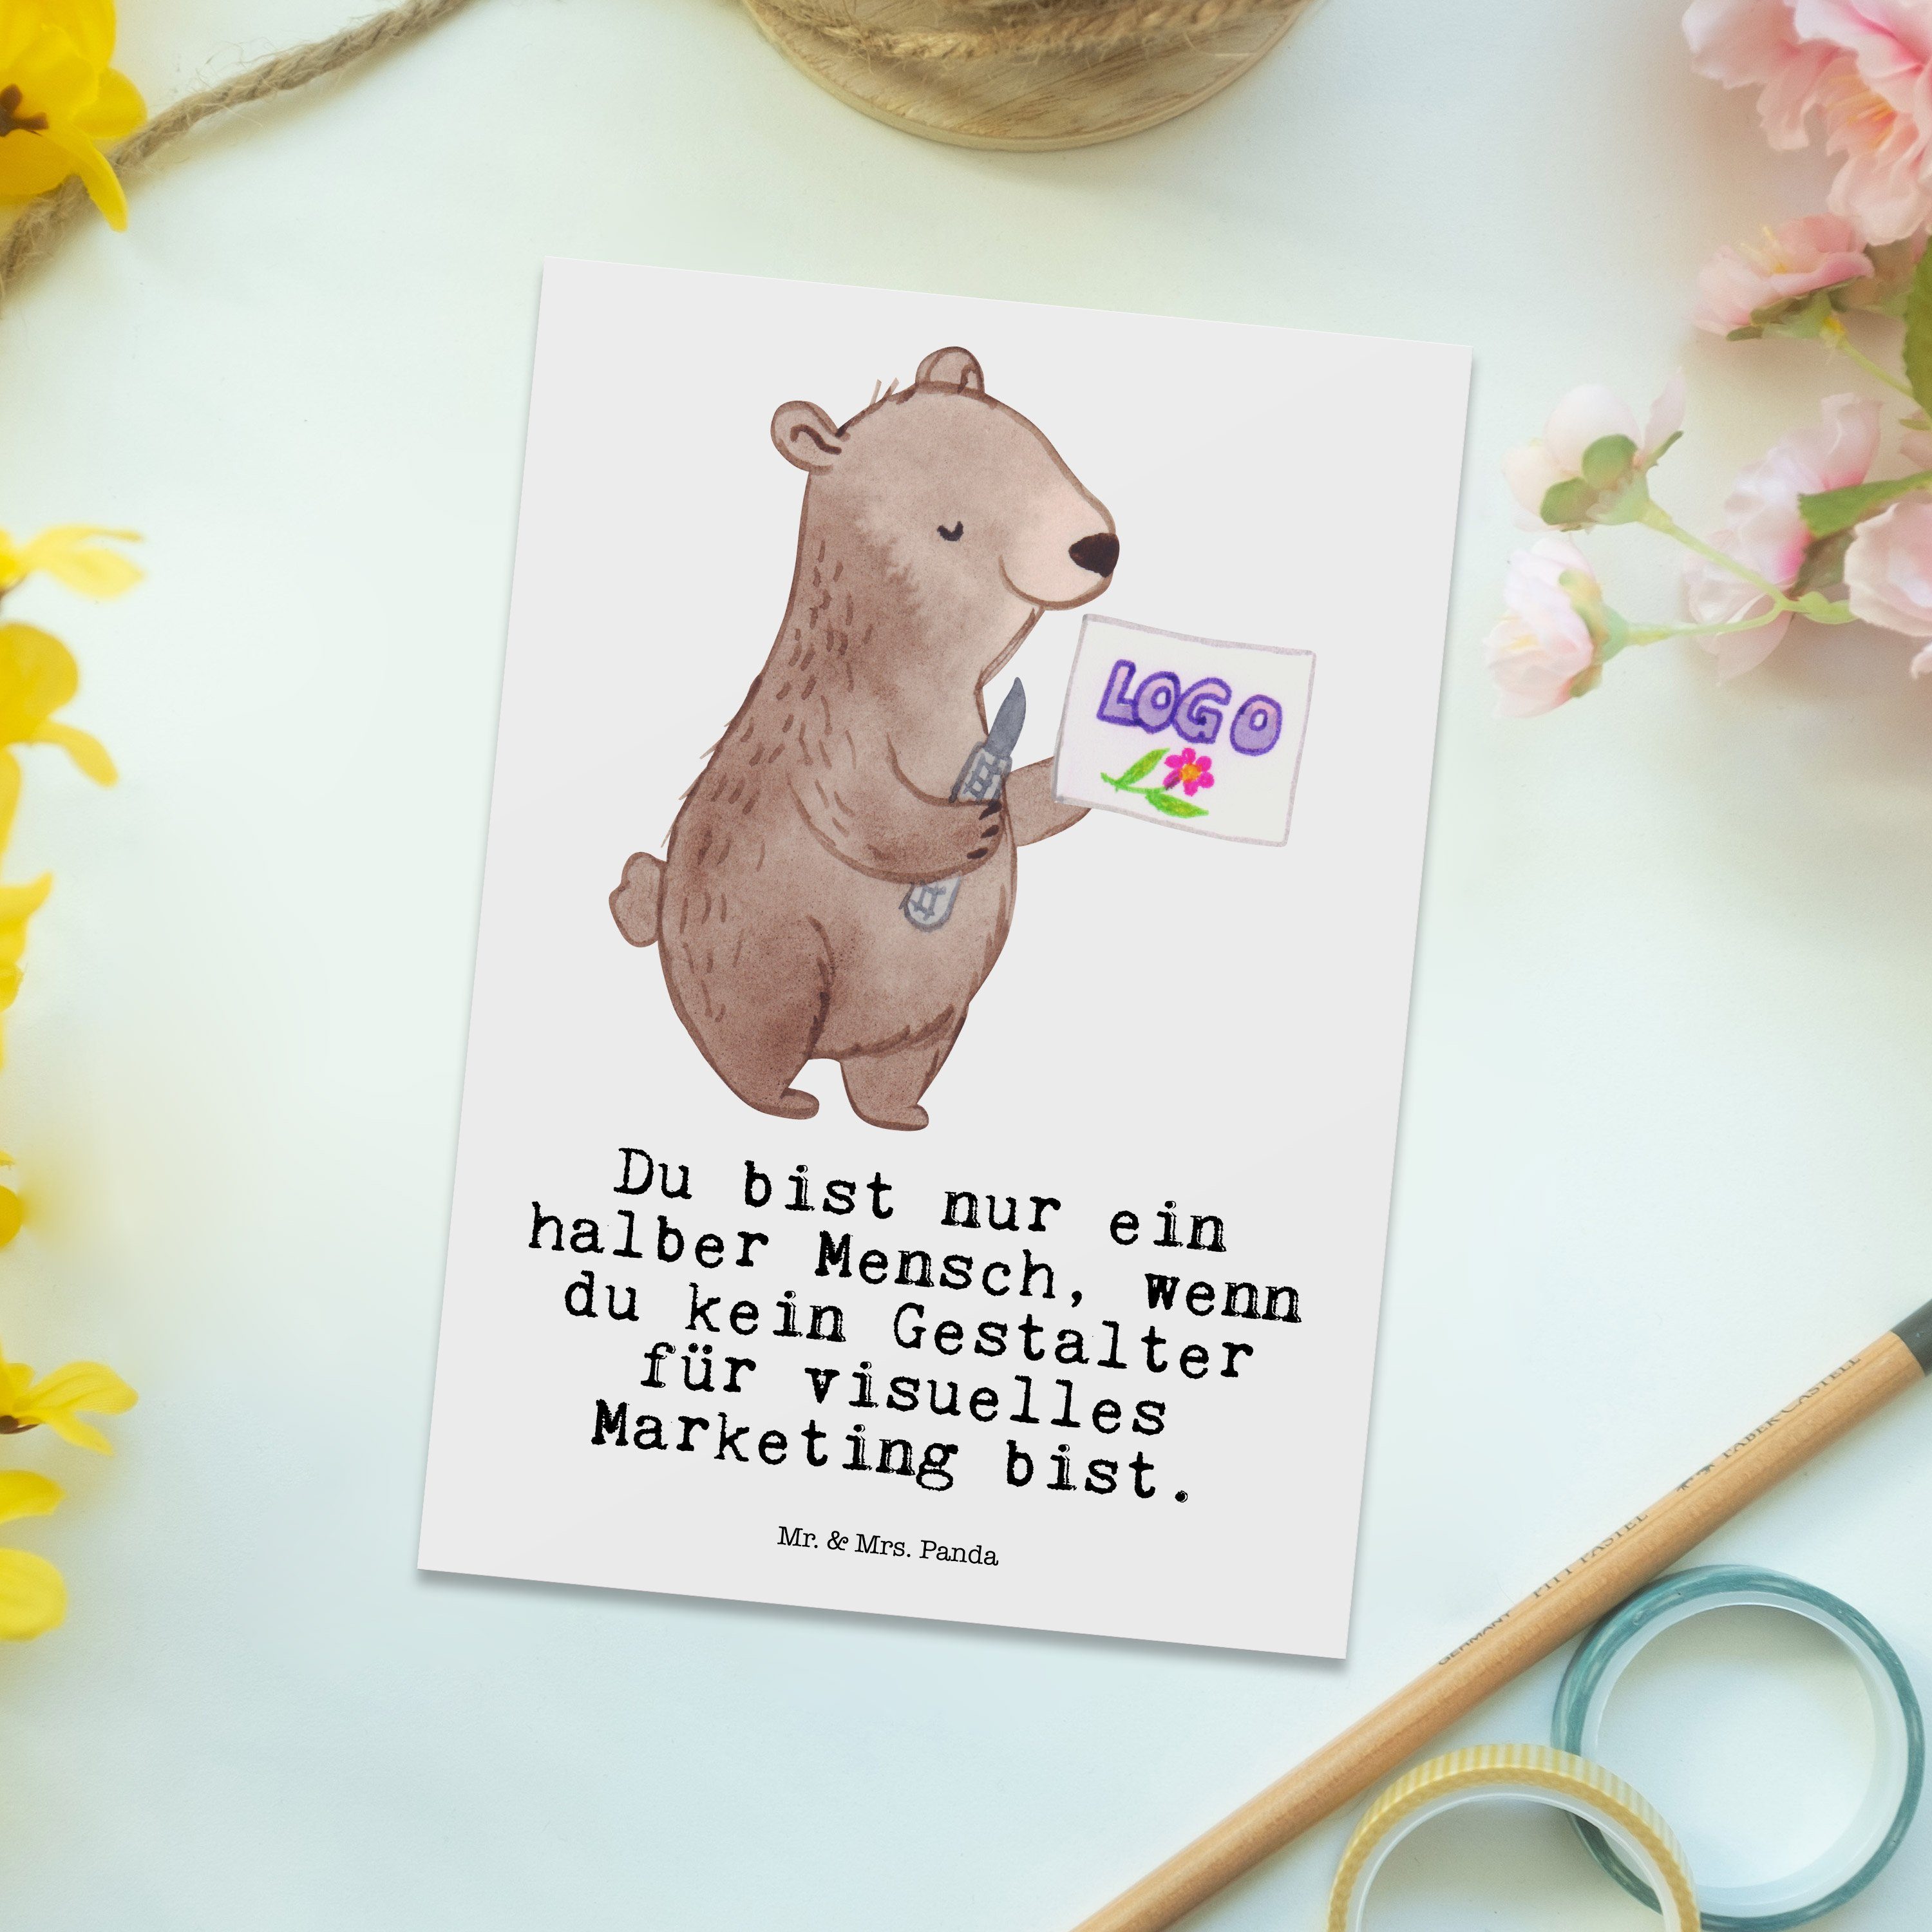 Mrs. - Marketing Weiß visuelles mit Mr. - Postkarte Herz für Grußkar Panda Geschenk, & Gestalter